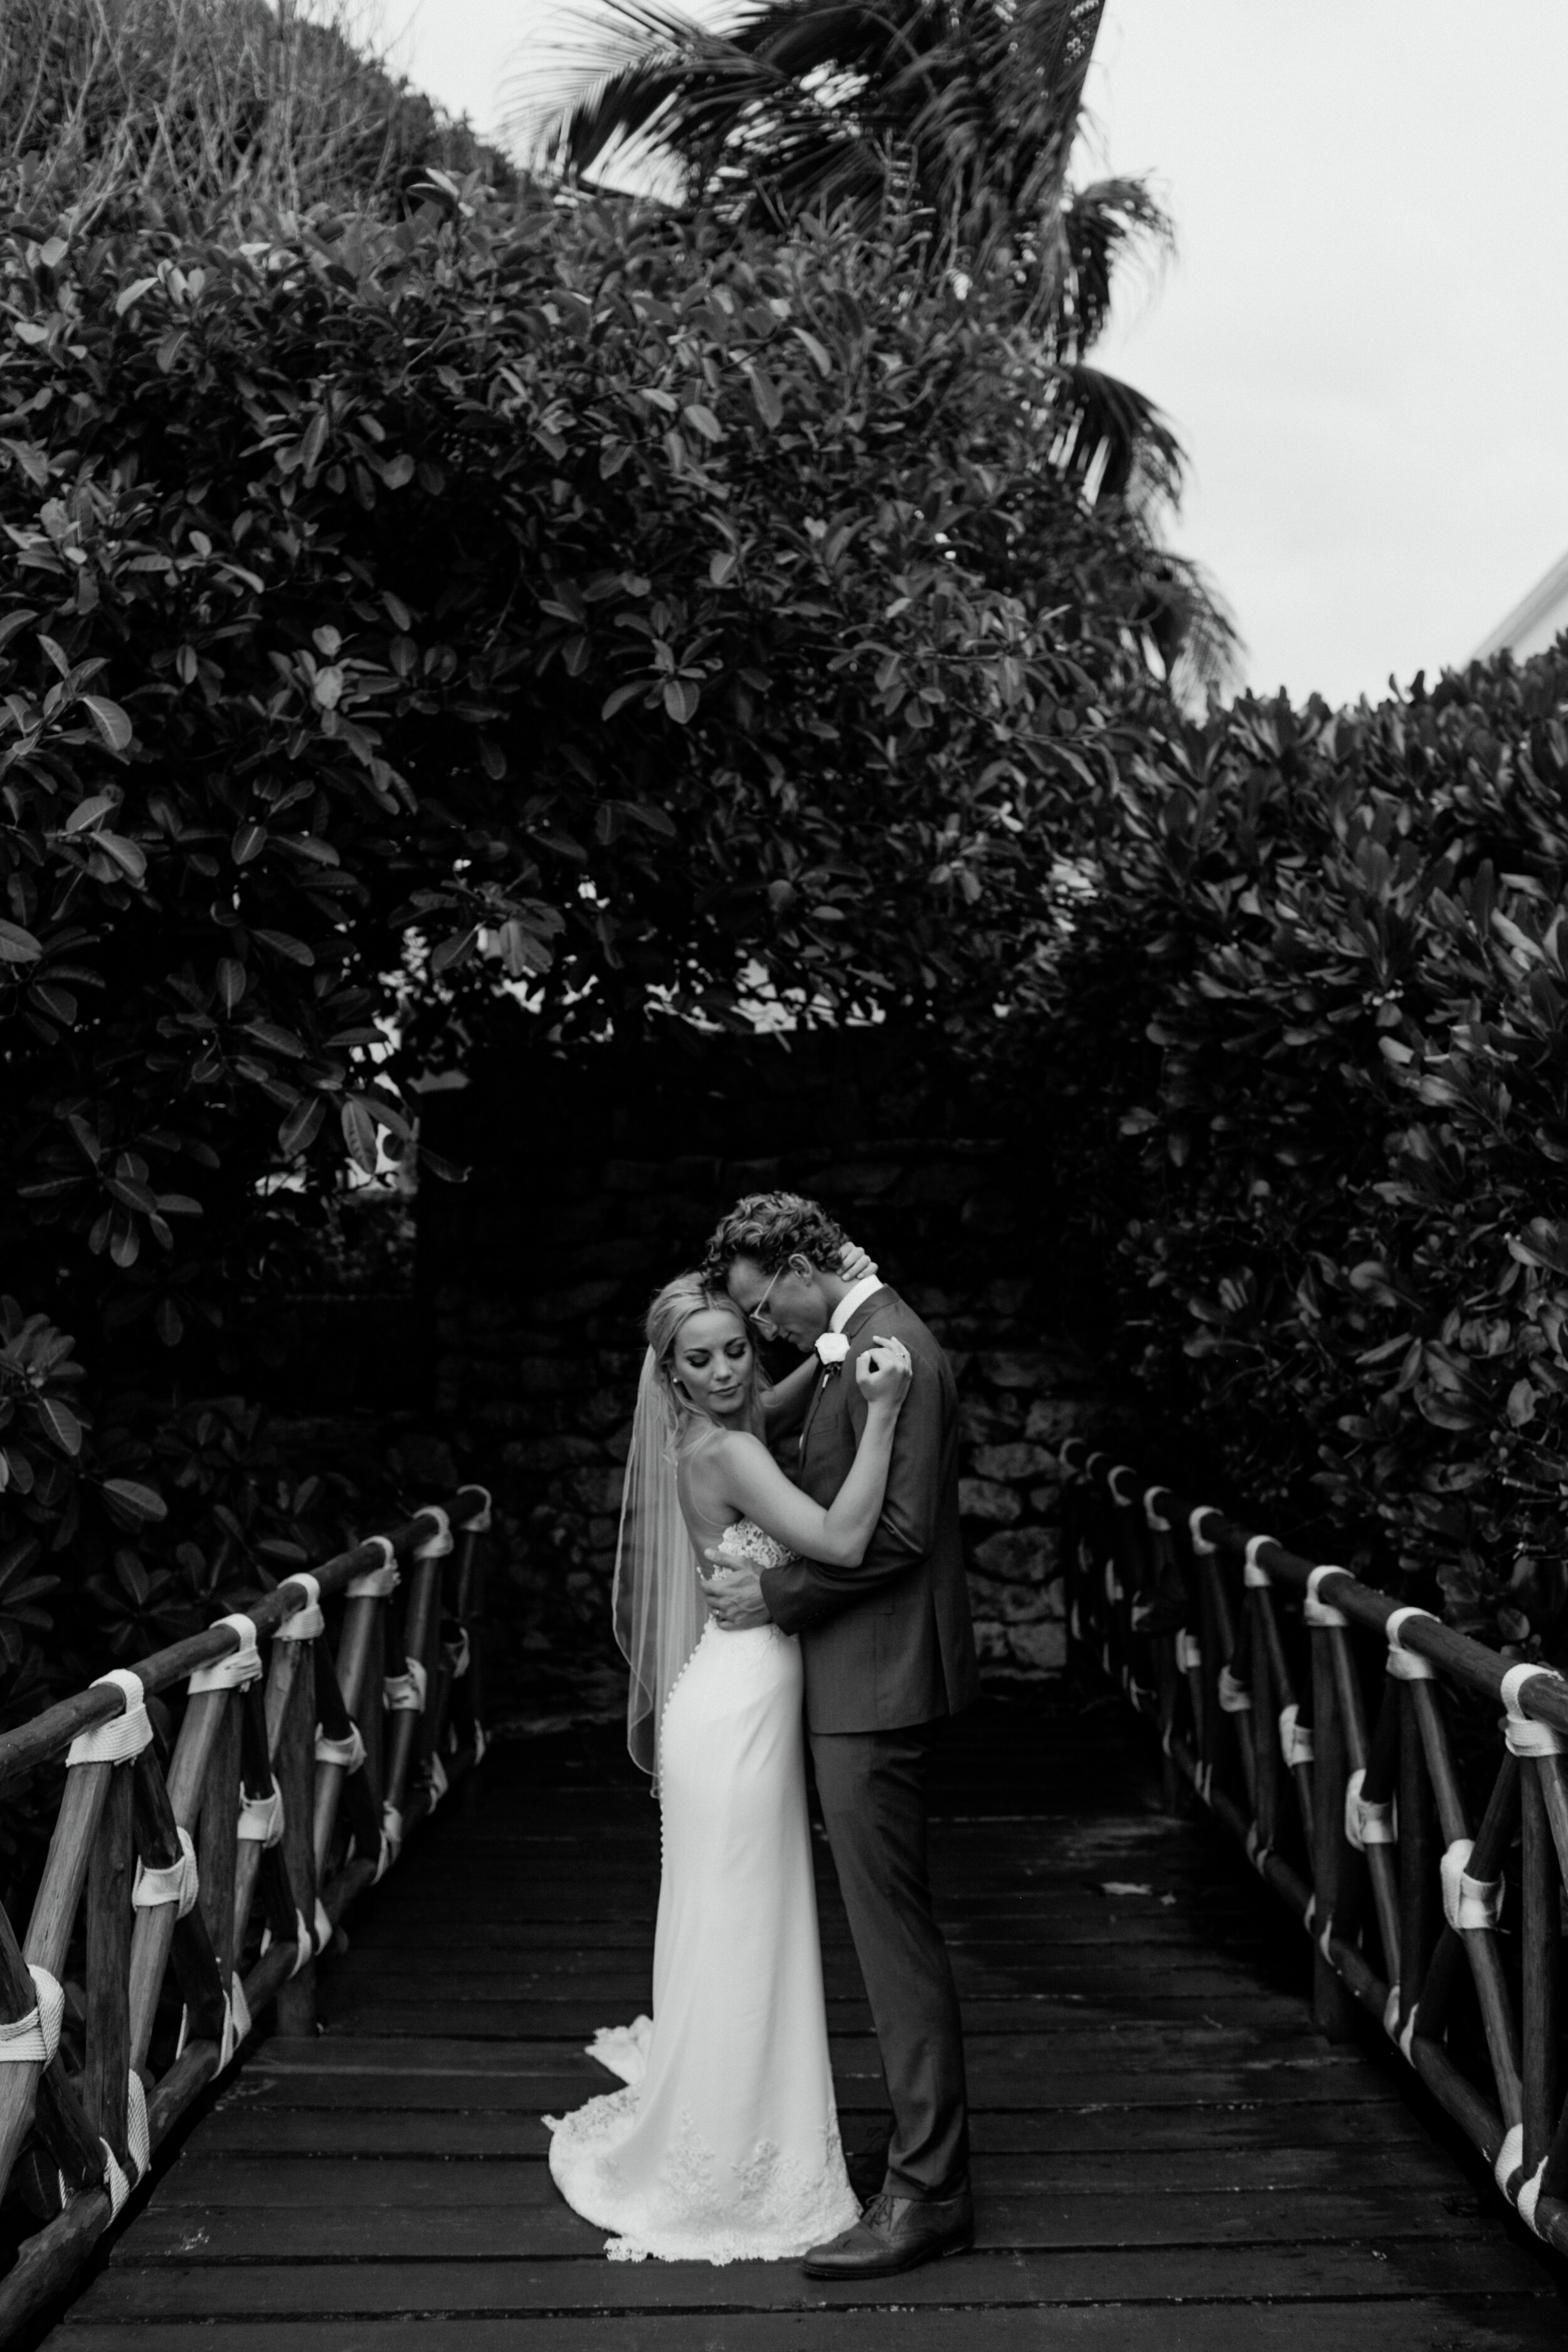 Cancun Wedding Photographer, Cancun Mexico Wedding, Destination Wedding photographer, Chicago wedding photographer, destination Cancun wedding